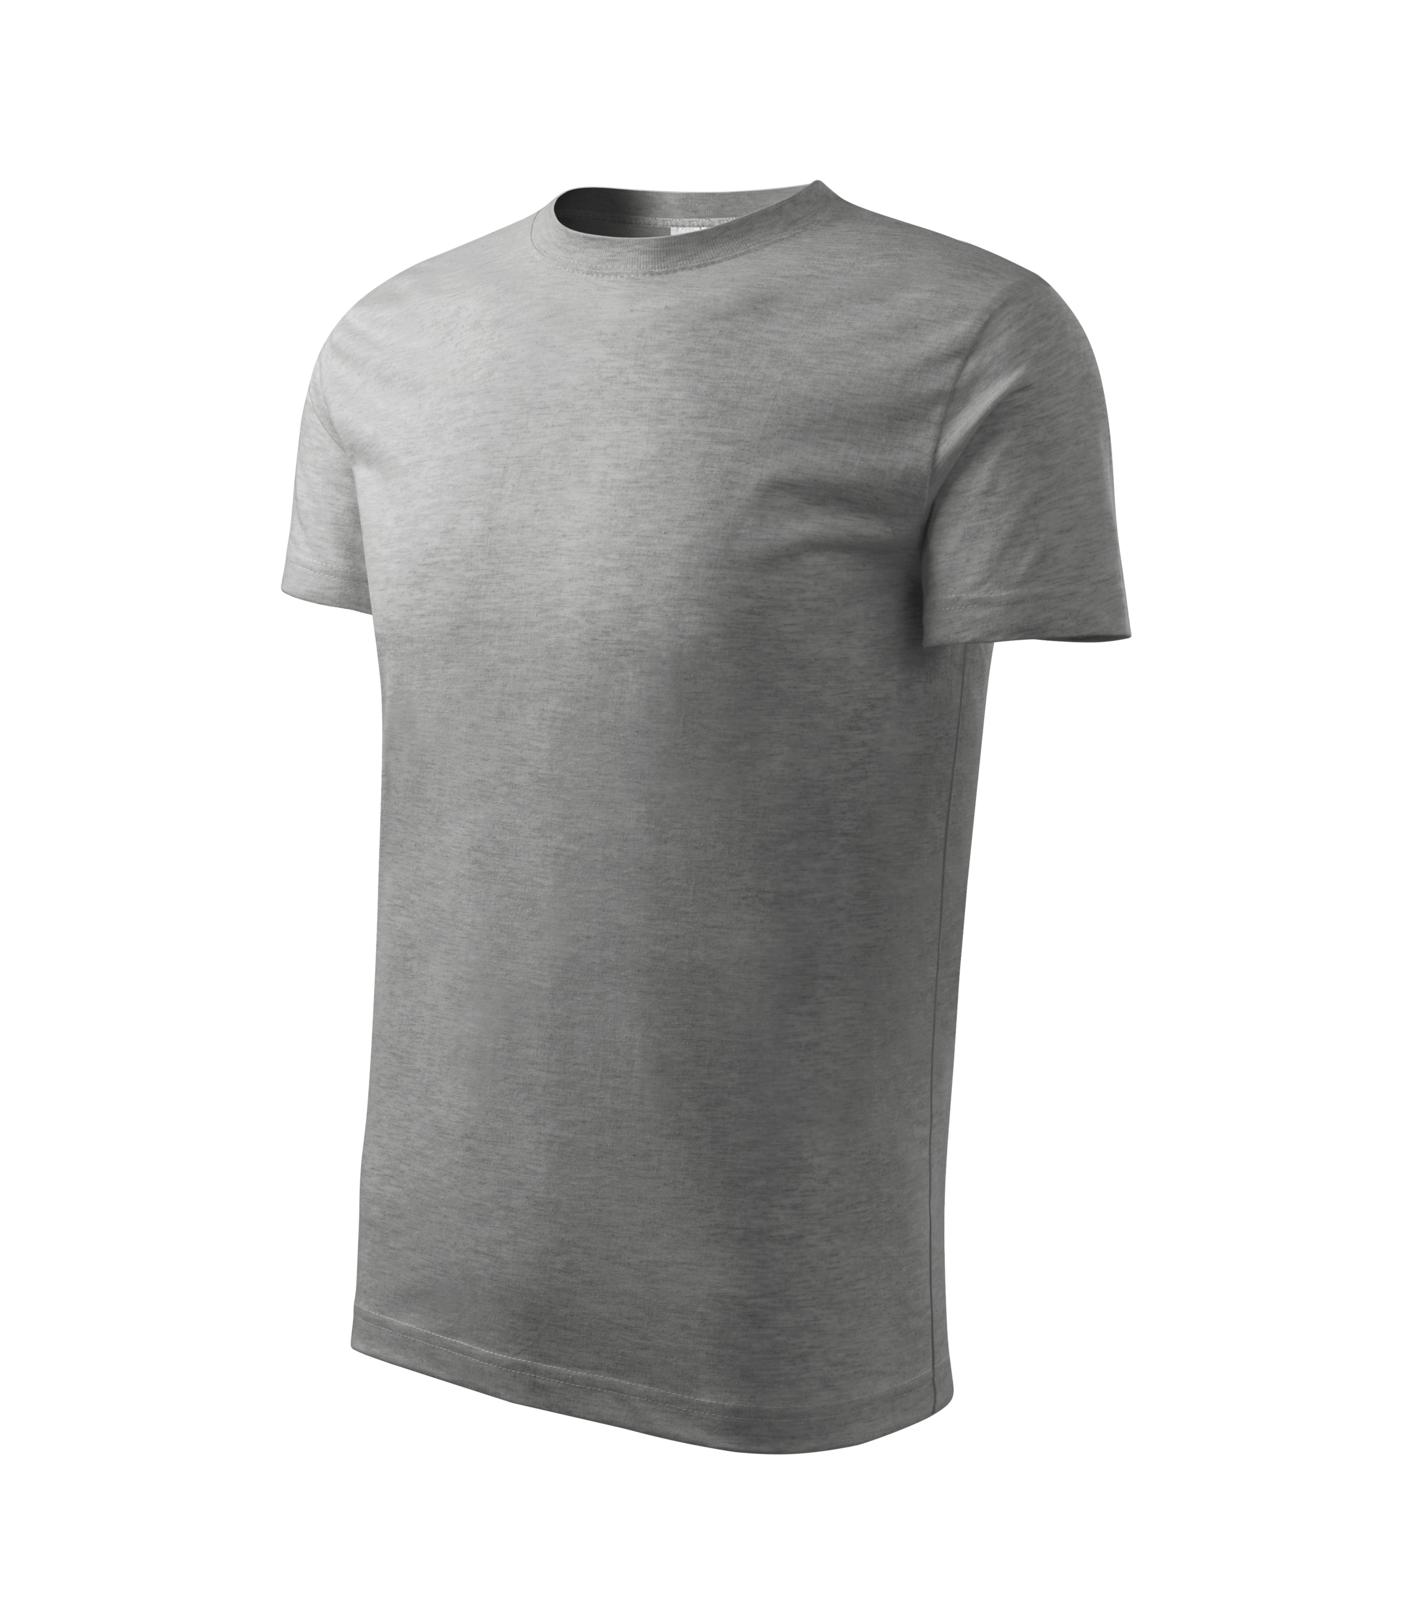 Classic New Tričko dětské Barva: tmavě šedý melír, Velikost: 110 cm/4 roky